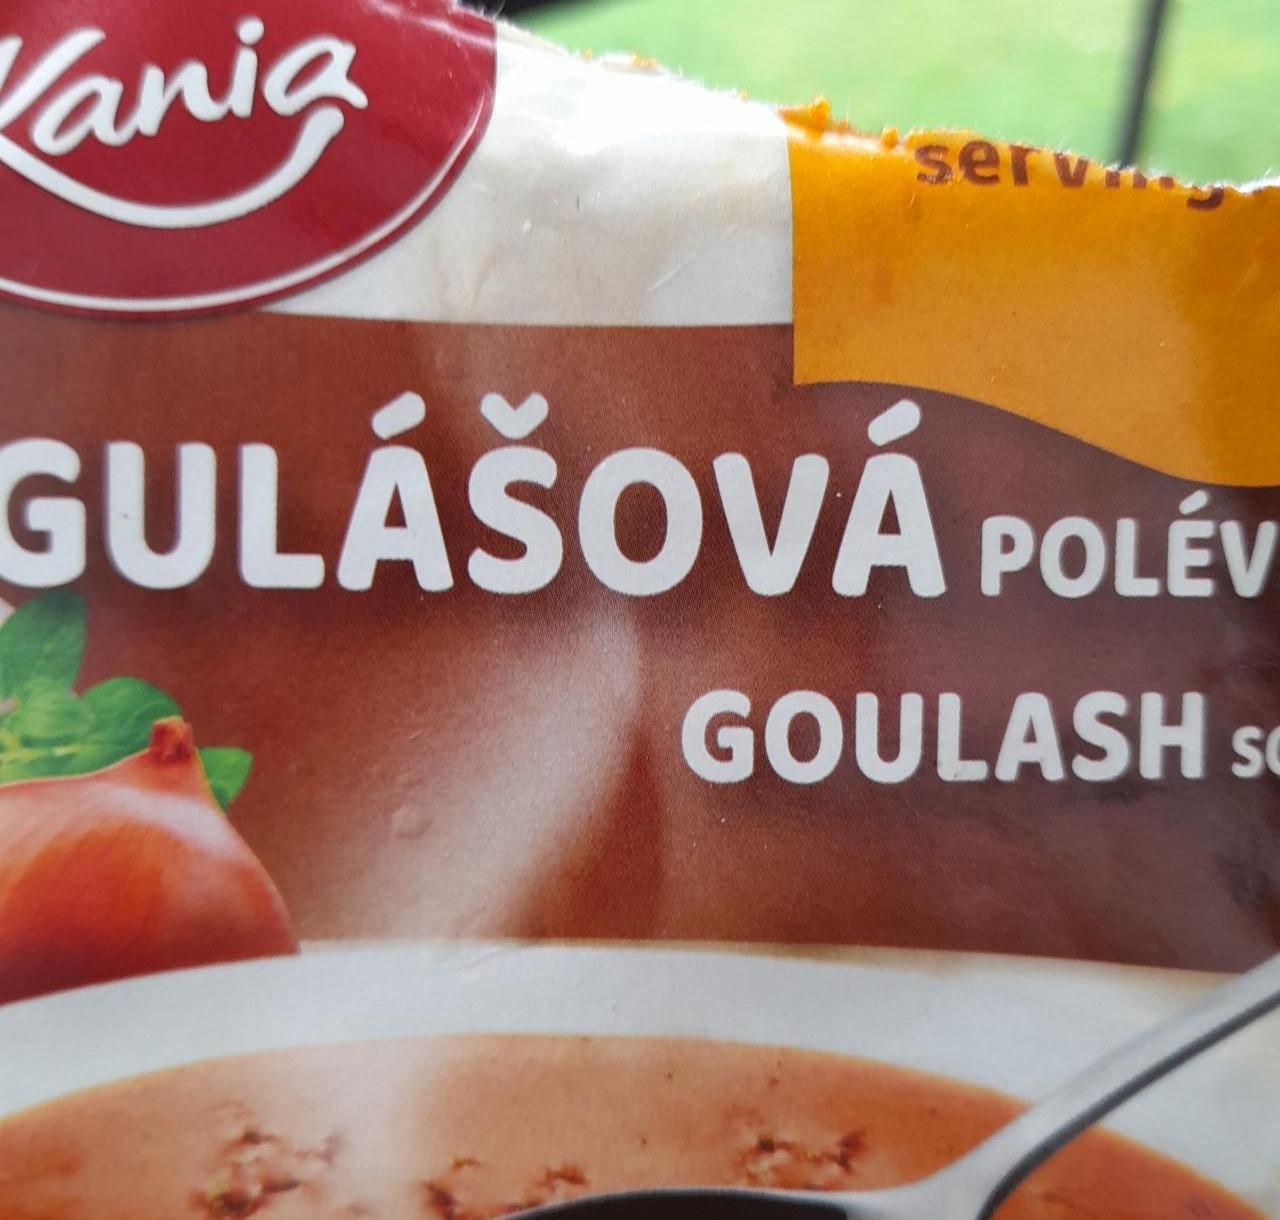 Fotografie - Gulášová polévka Kania